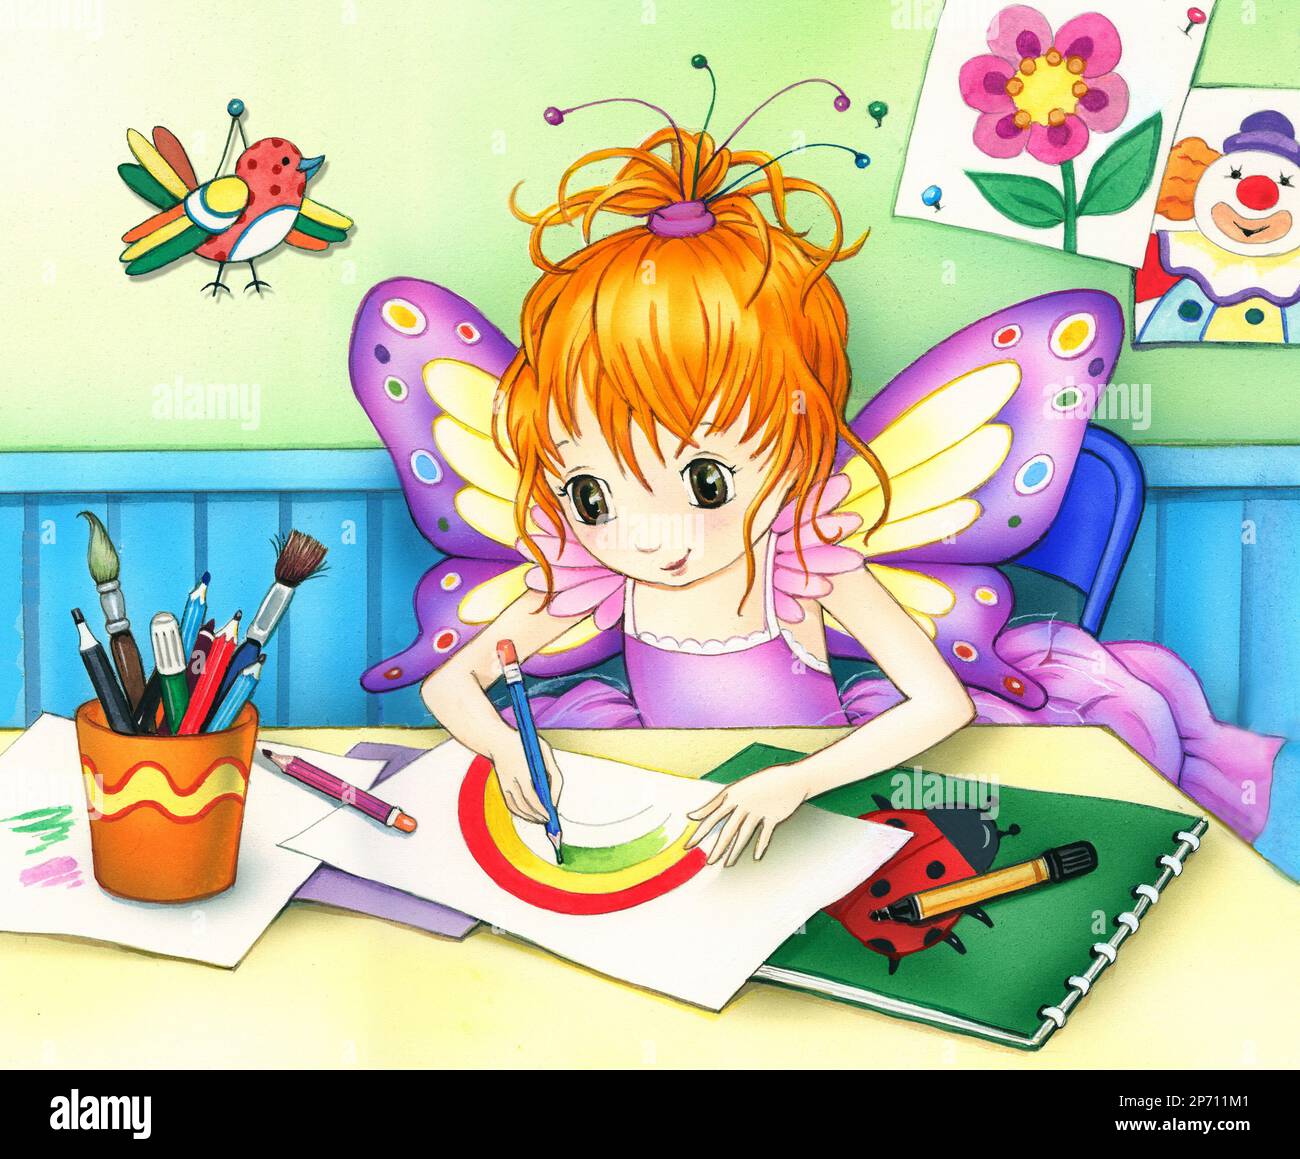 Jeune fille-Fairy créant des images Banque D'Images